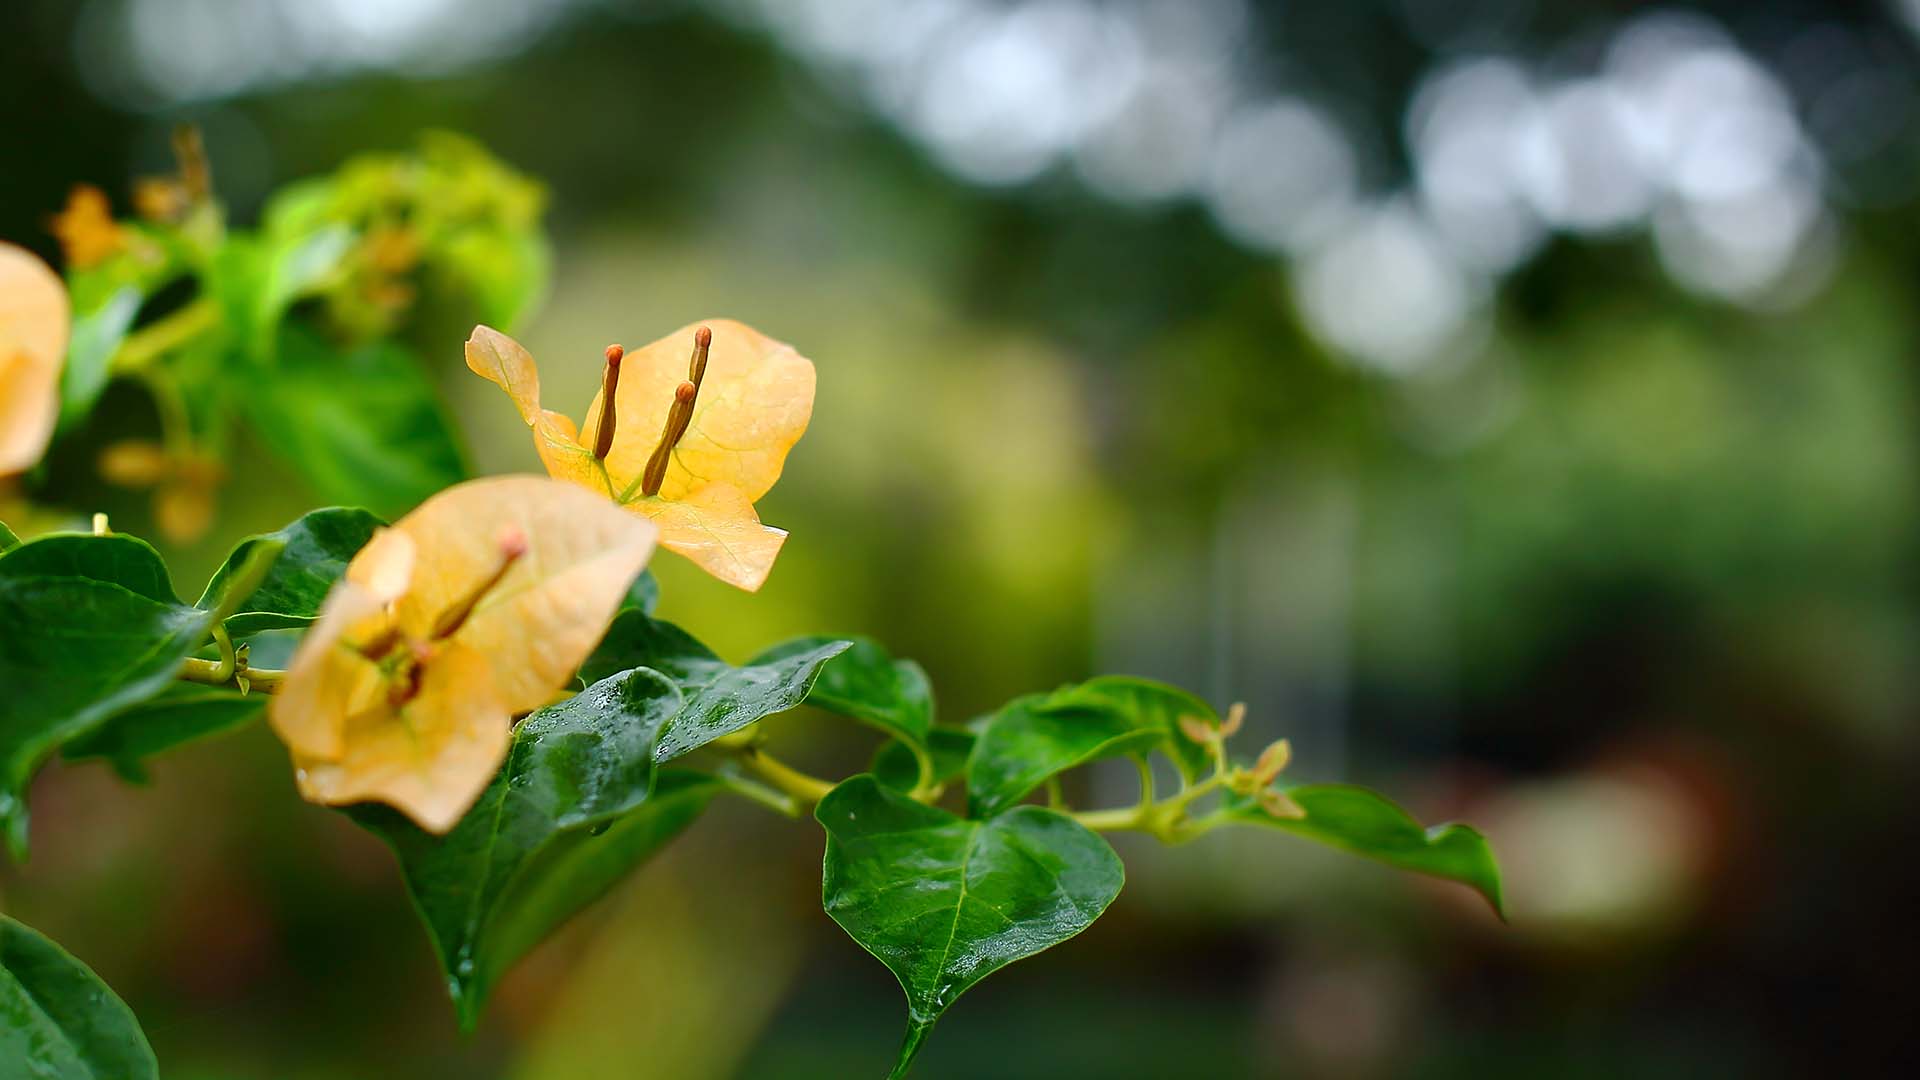 高清微距植物摄影图片 绿色护眼花卉植物微距摄影图片(8)